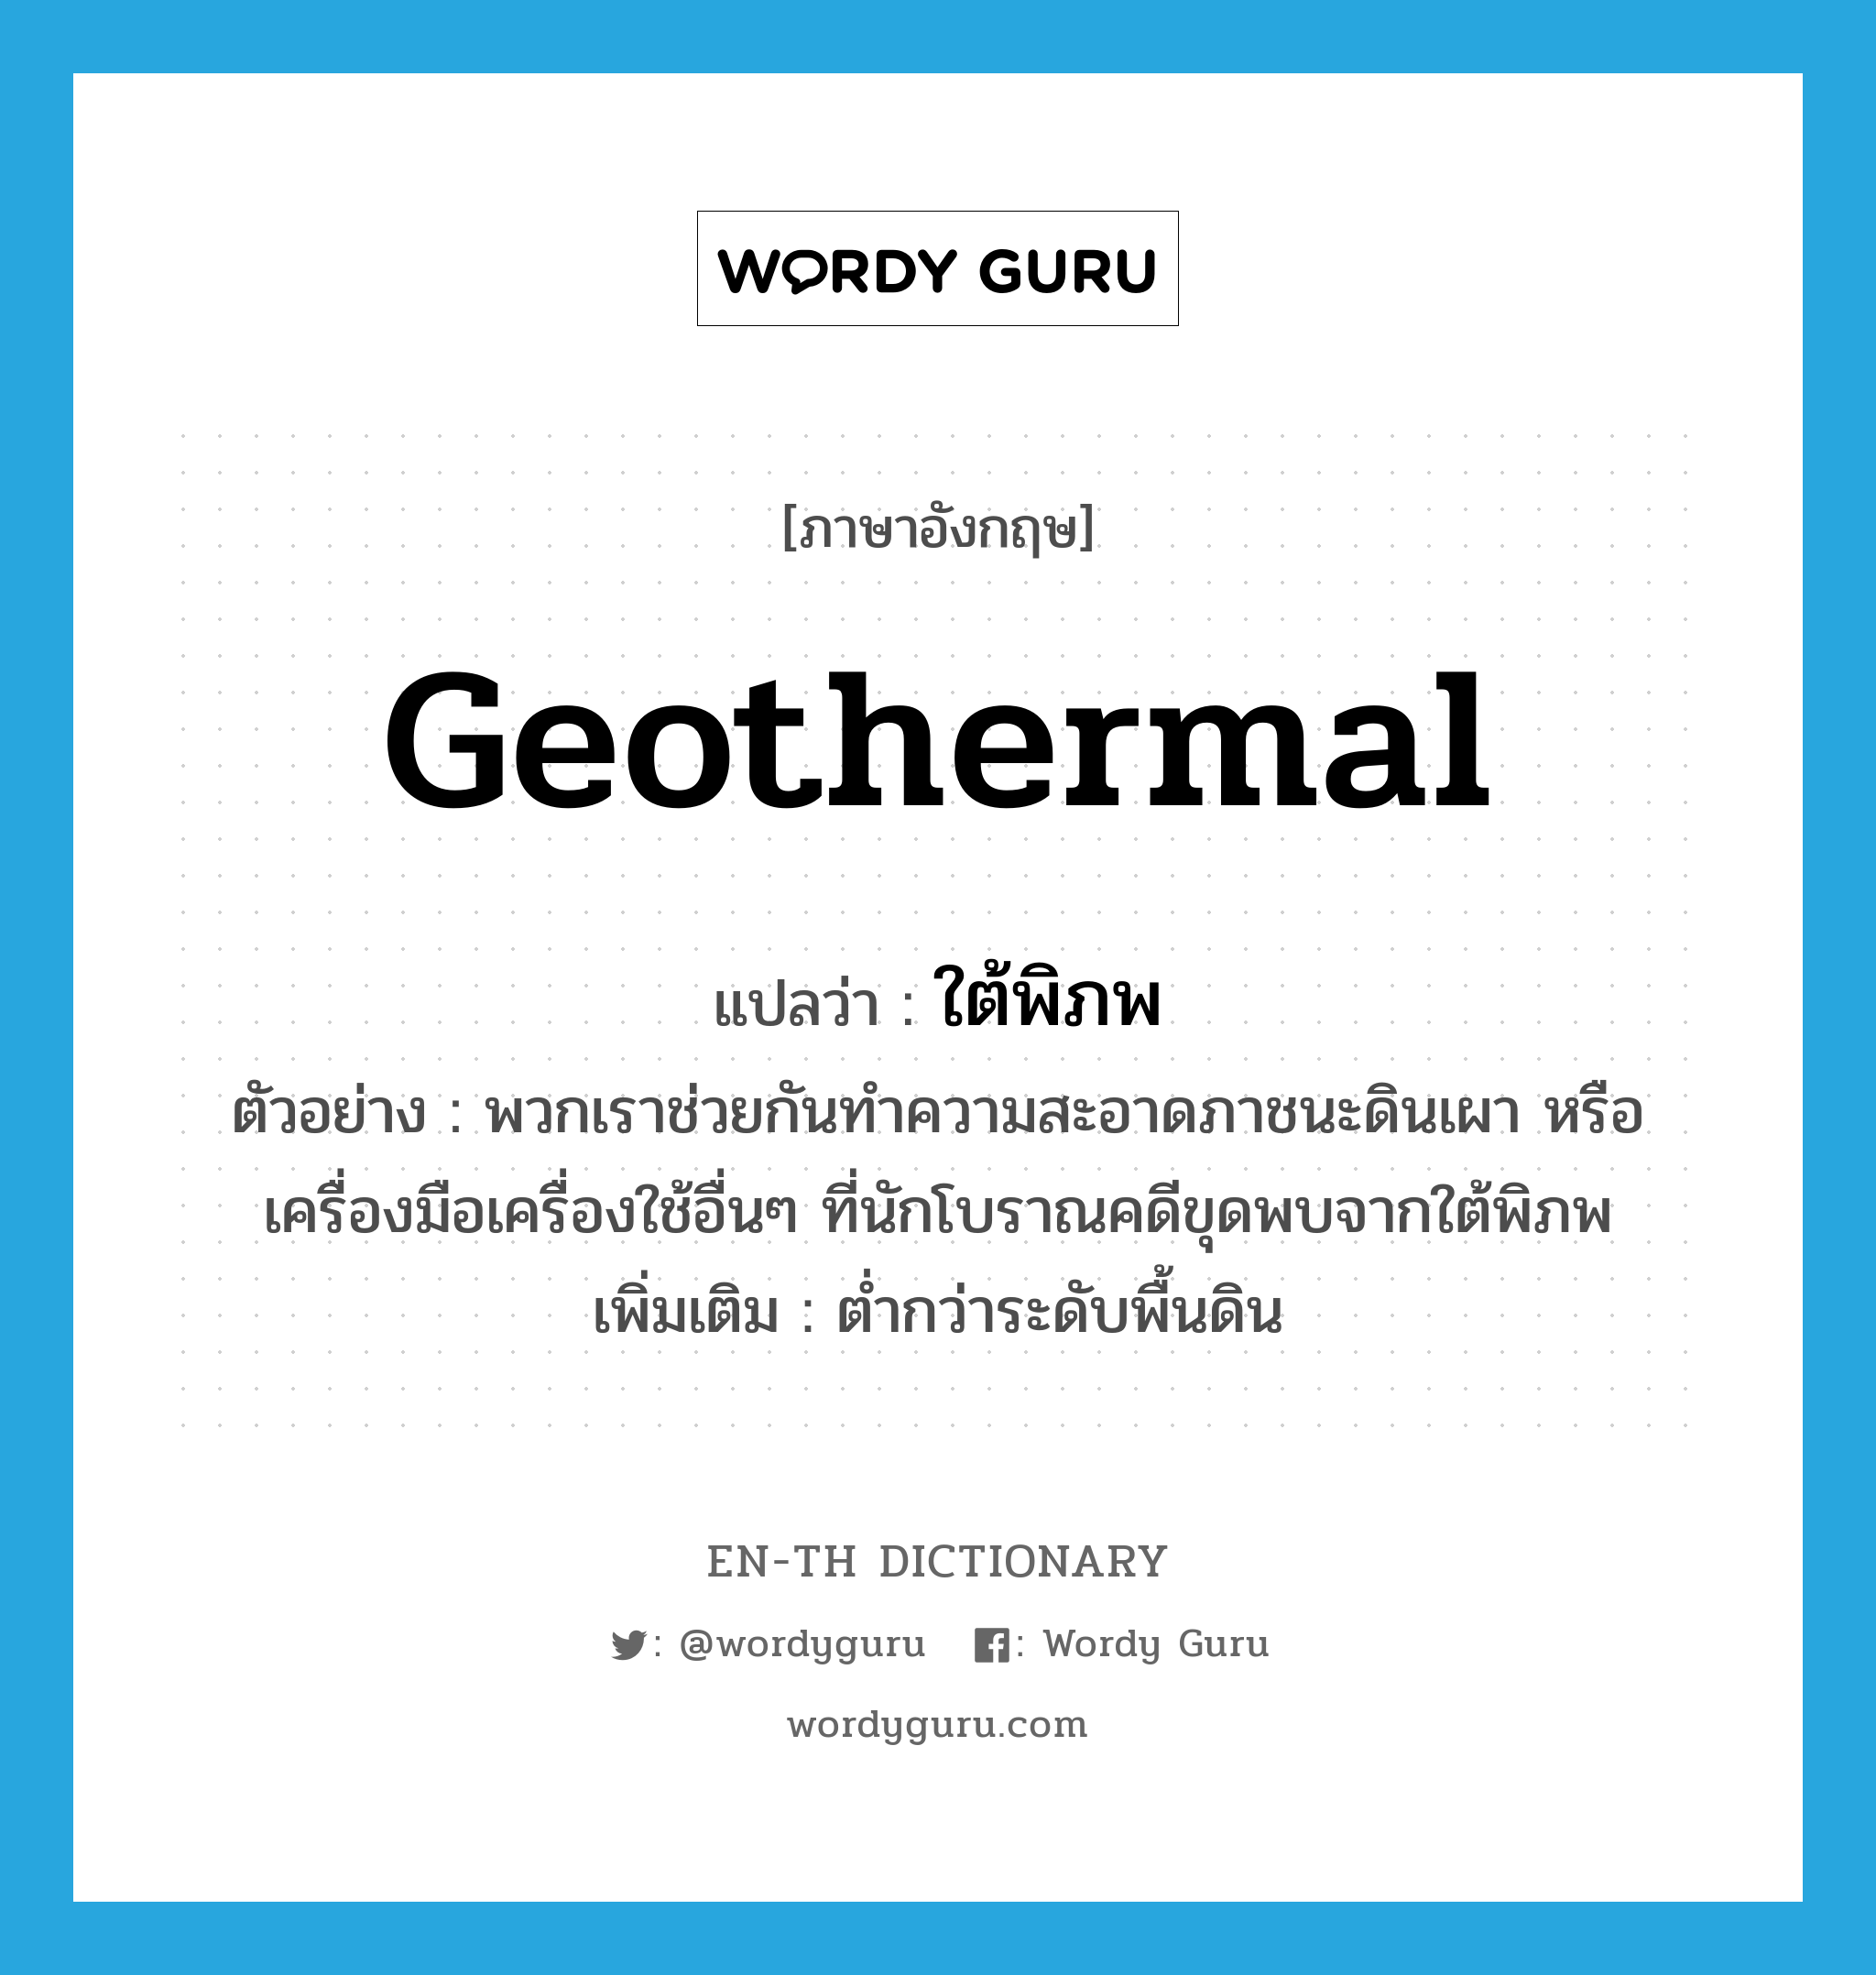 geothermal แปลว่า?, คำศัพท์ภาษาอังกฤษ geothermal แปลว่า ใต้พิภพ ประเภท N ตัวอย่าง พวกเราช่วยกันทำความสะอาดภาชนะดินเผา หรือเครื่องมือเครื่องใช้อื่นๆ ที่นักโบราณคดีขุดพบจากใต้พิภพ เพิ่มเติม ต่ำกว่าระดับพื้นดิน หมวด N